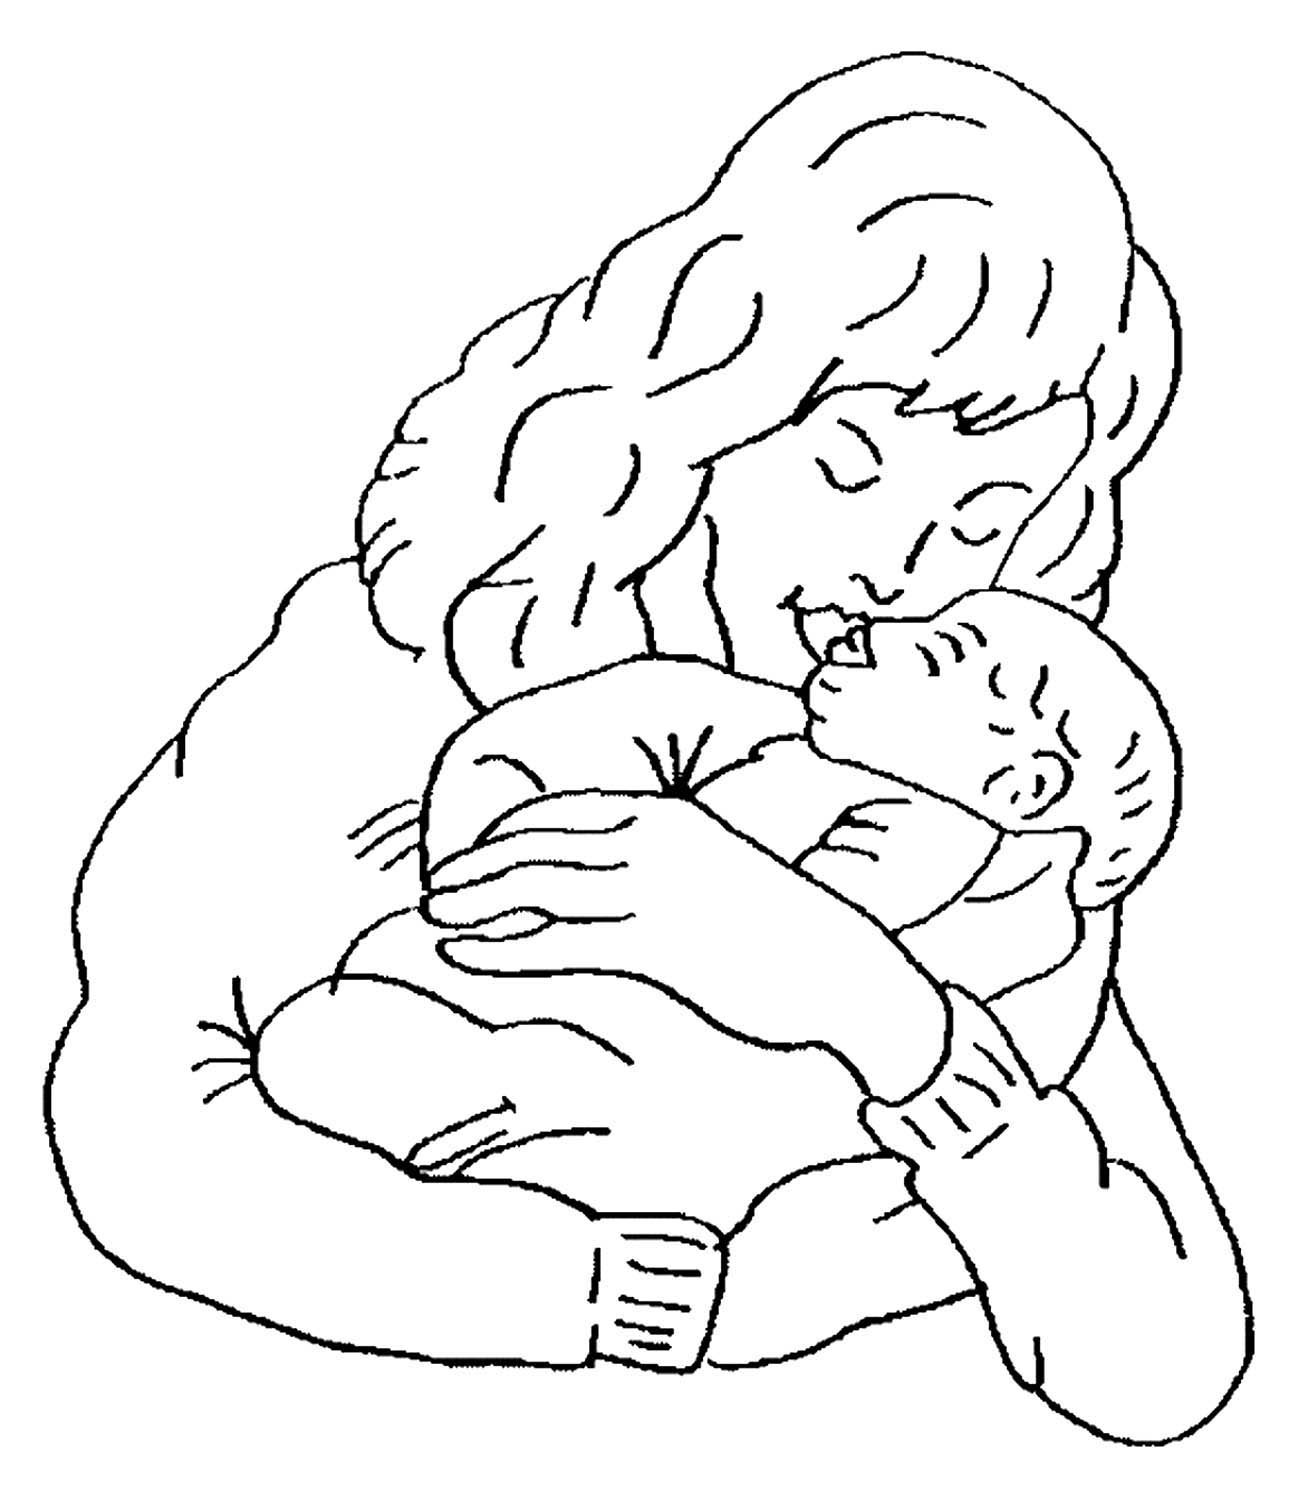 Распечатать про маму. Рисунок ко Дню матери. Раскраска мама с младенцем. Мама с ребенком раскраска для детей. Рисунок на день матери легкий.